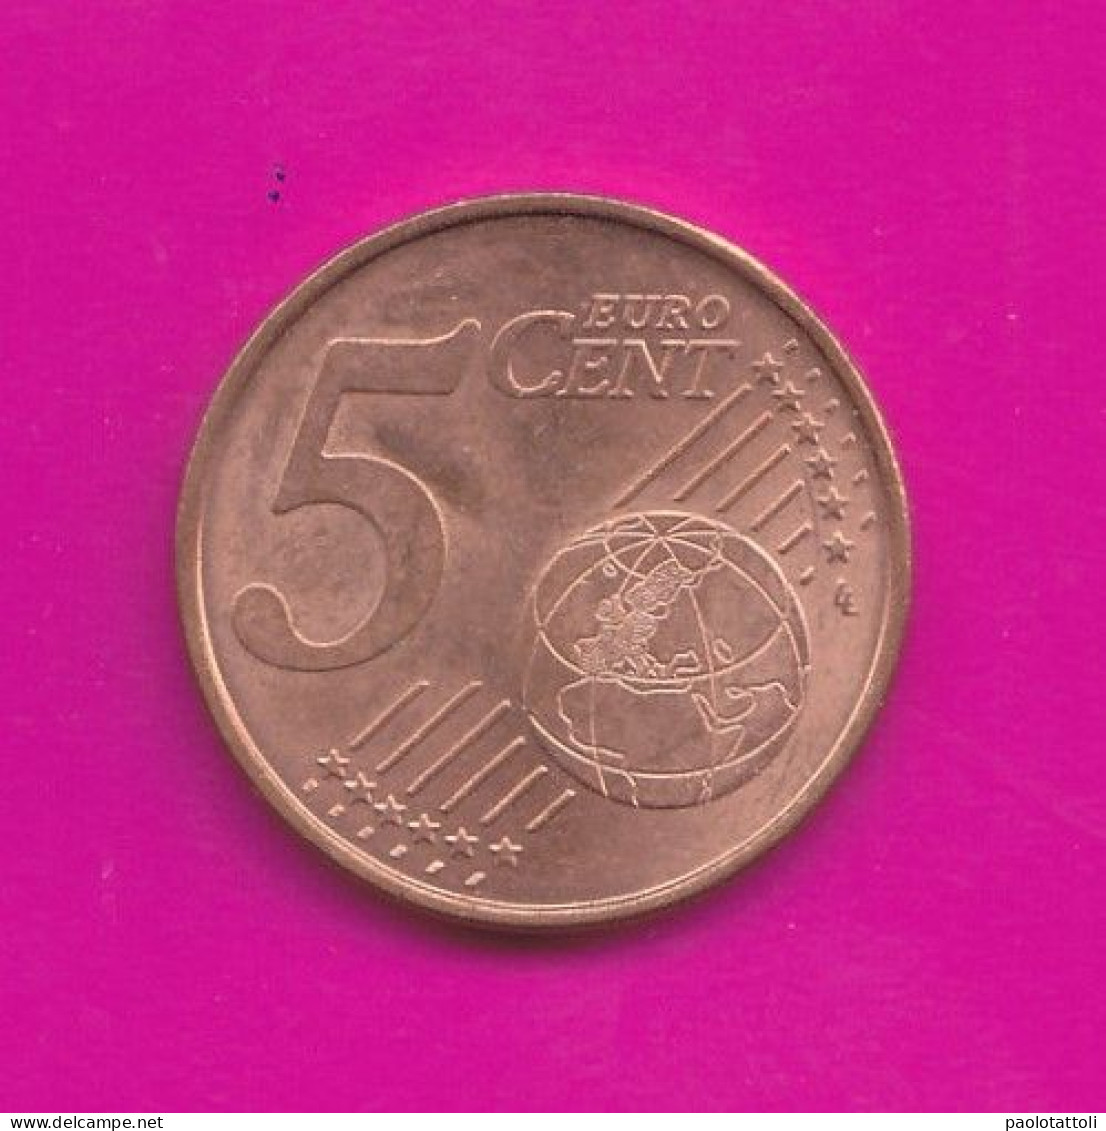 Spain, 2020- 5 Euro Cent- Nickel Brass- Obverse Sagrata Familia. Reverse Denomination- SPL, EF, SUP, VZ- - Spain